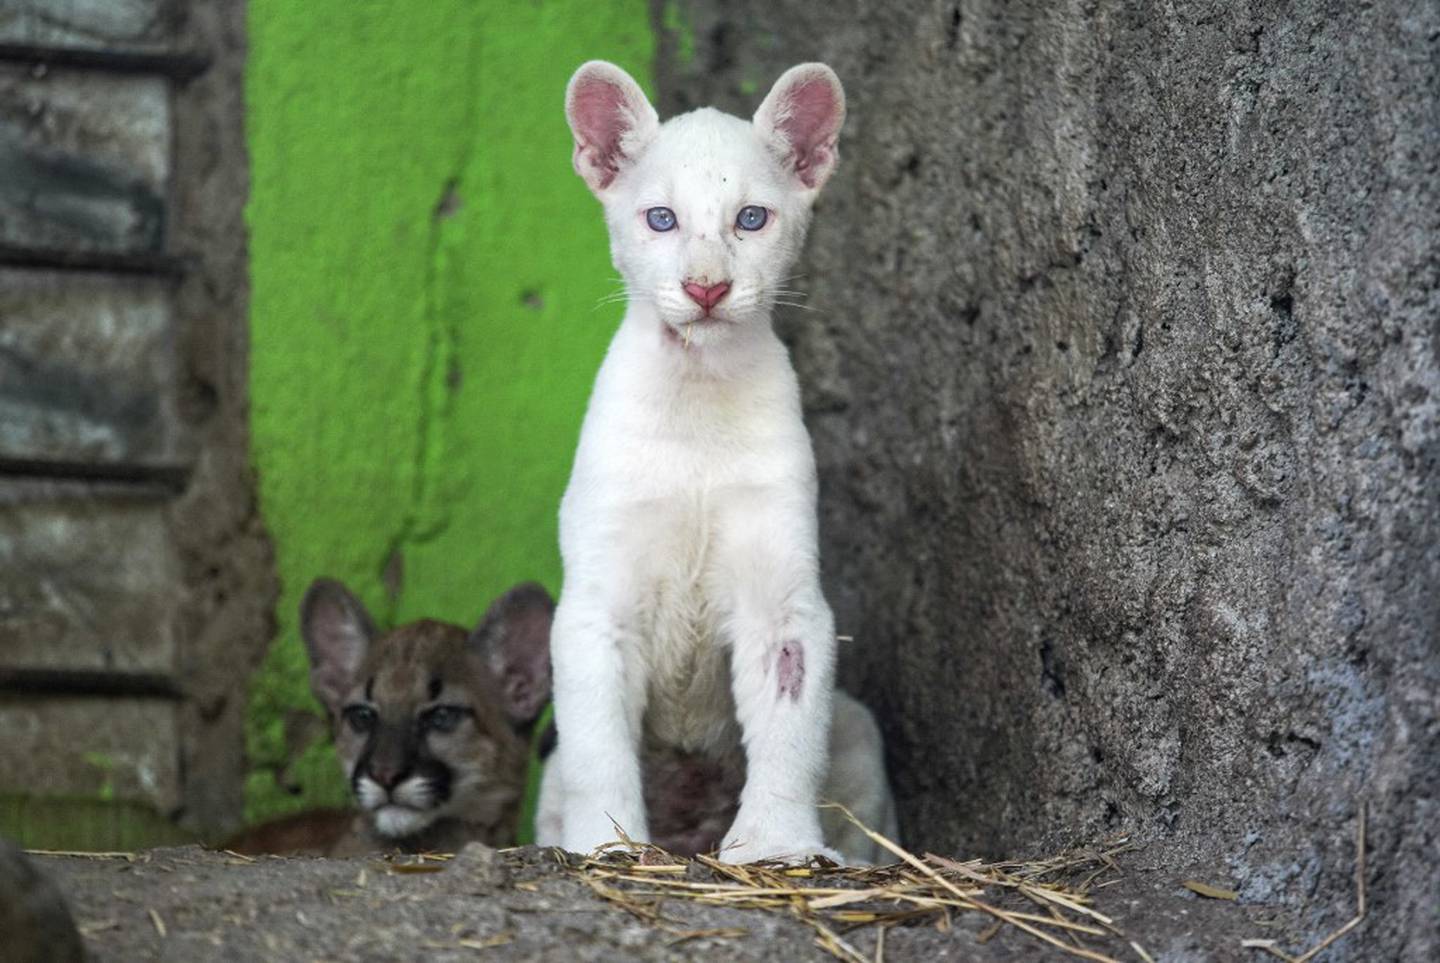 Itzae, cuyo significado en maya es "regalo de Dios", es el nombre de la puma albina que nació en Nicaragua, una especie considerada en peligro de extinción.